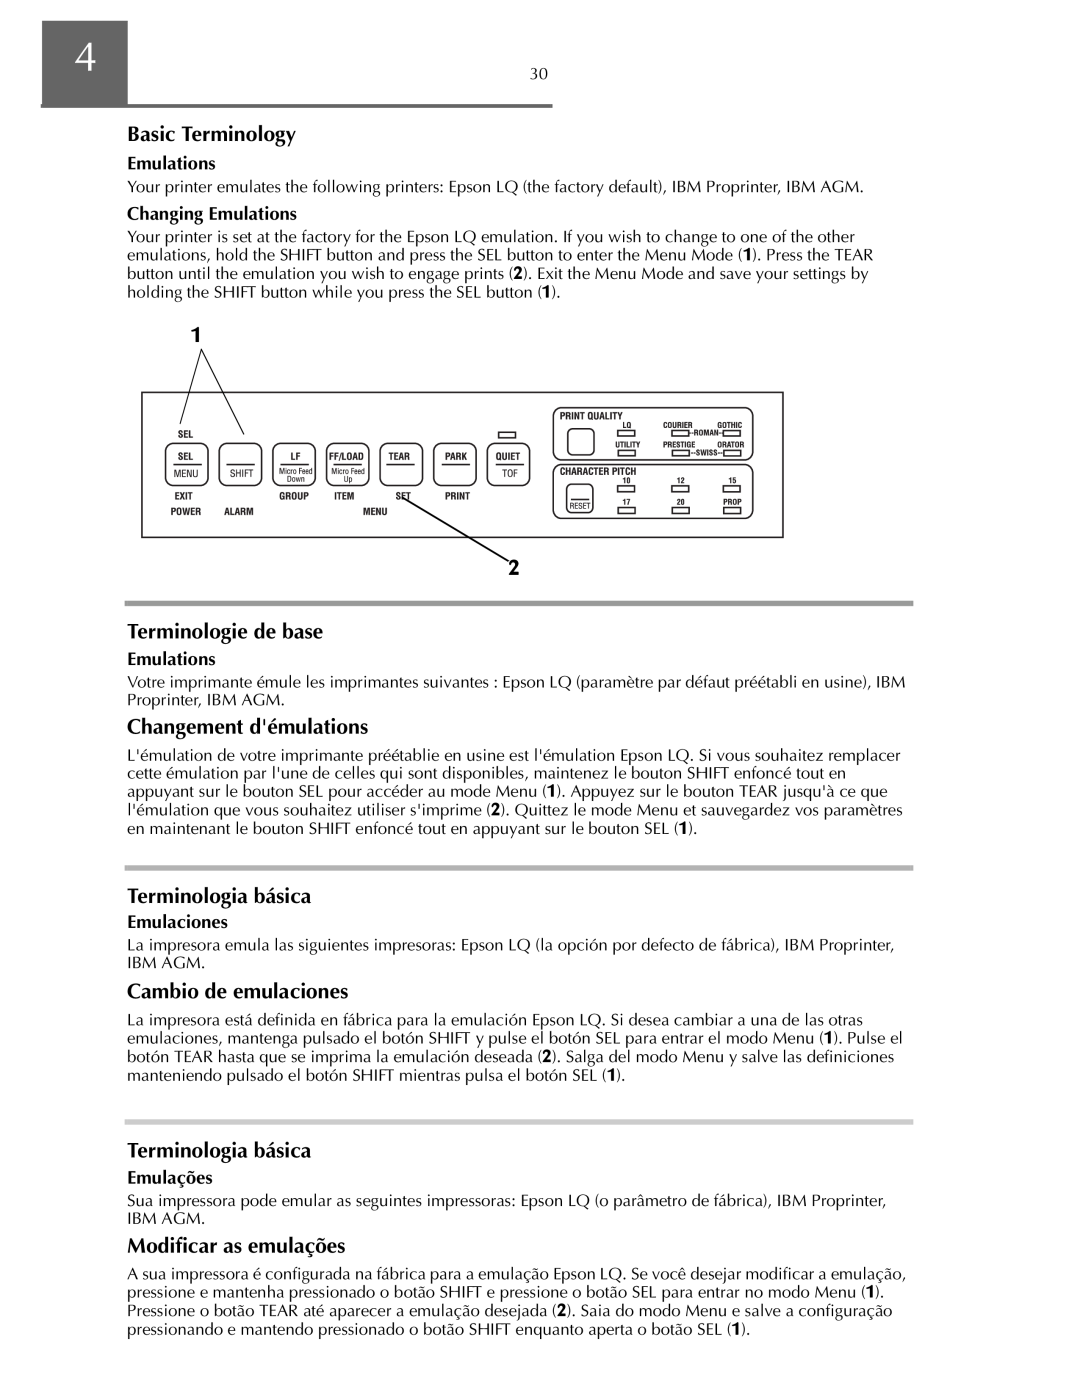 Oki ML590 Basic Terminology, Terminologie de base, Changement démulations, Terminologia básica, Cambio de emulaciones 